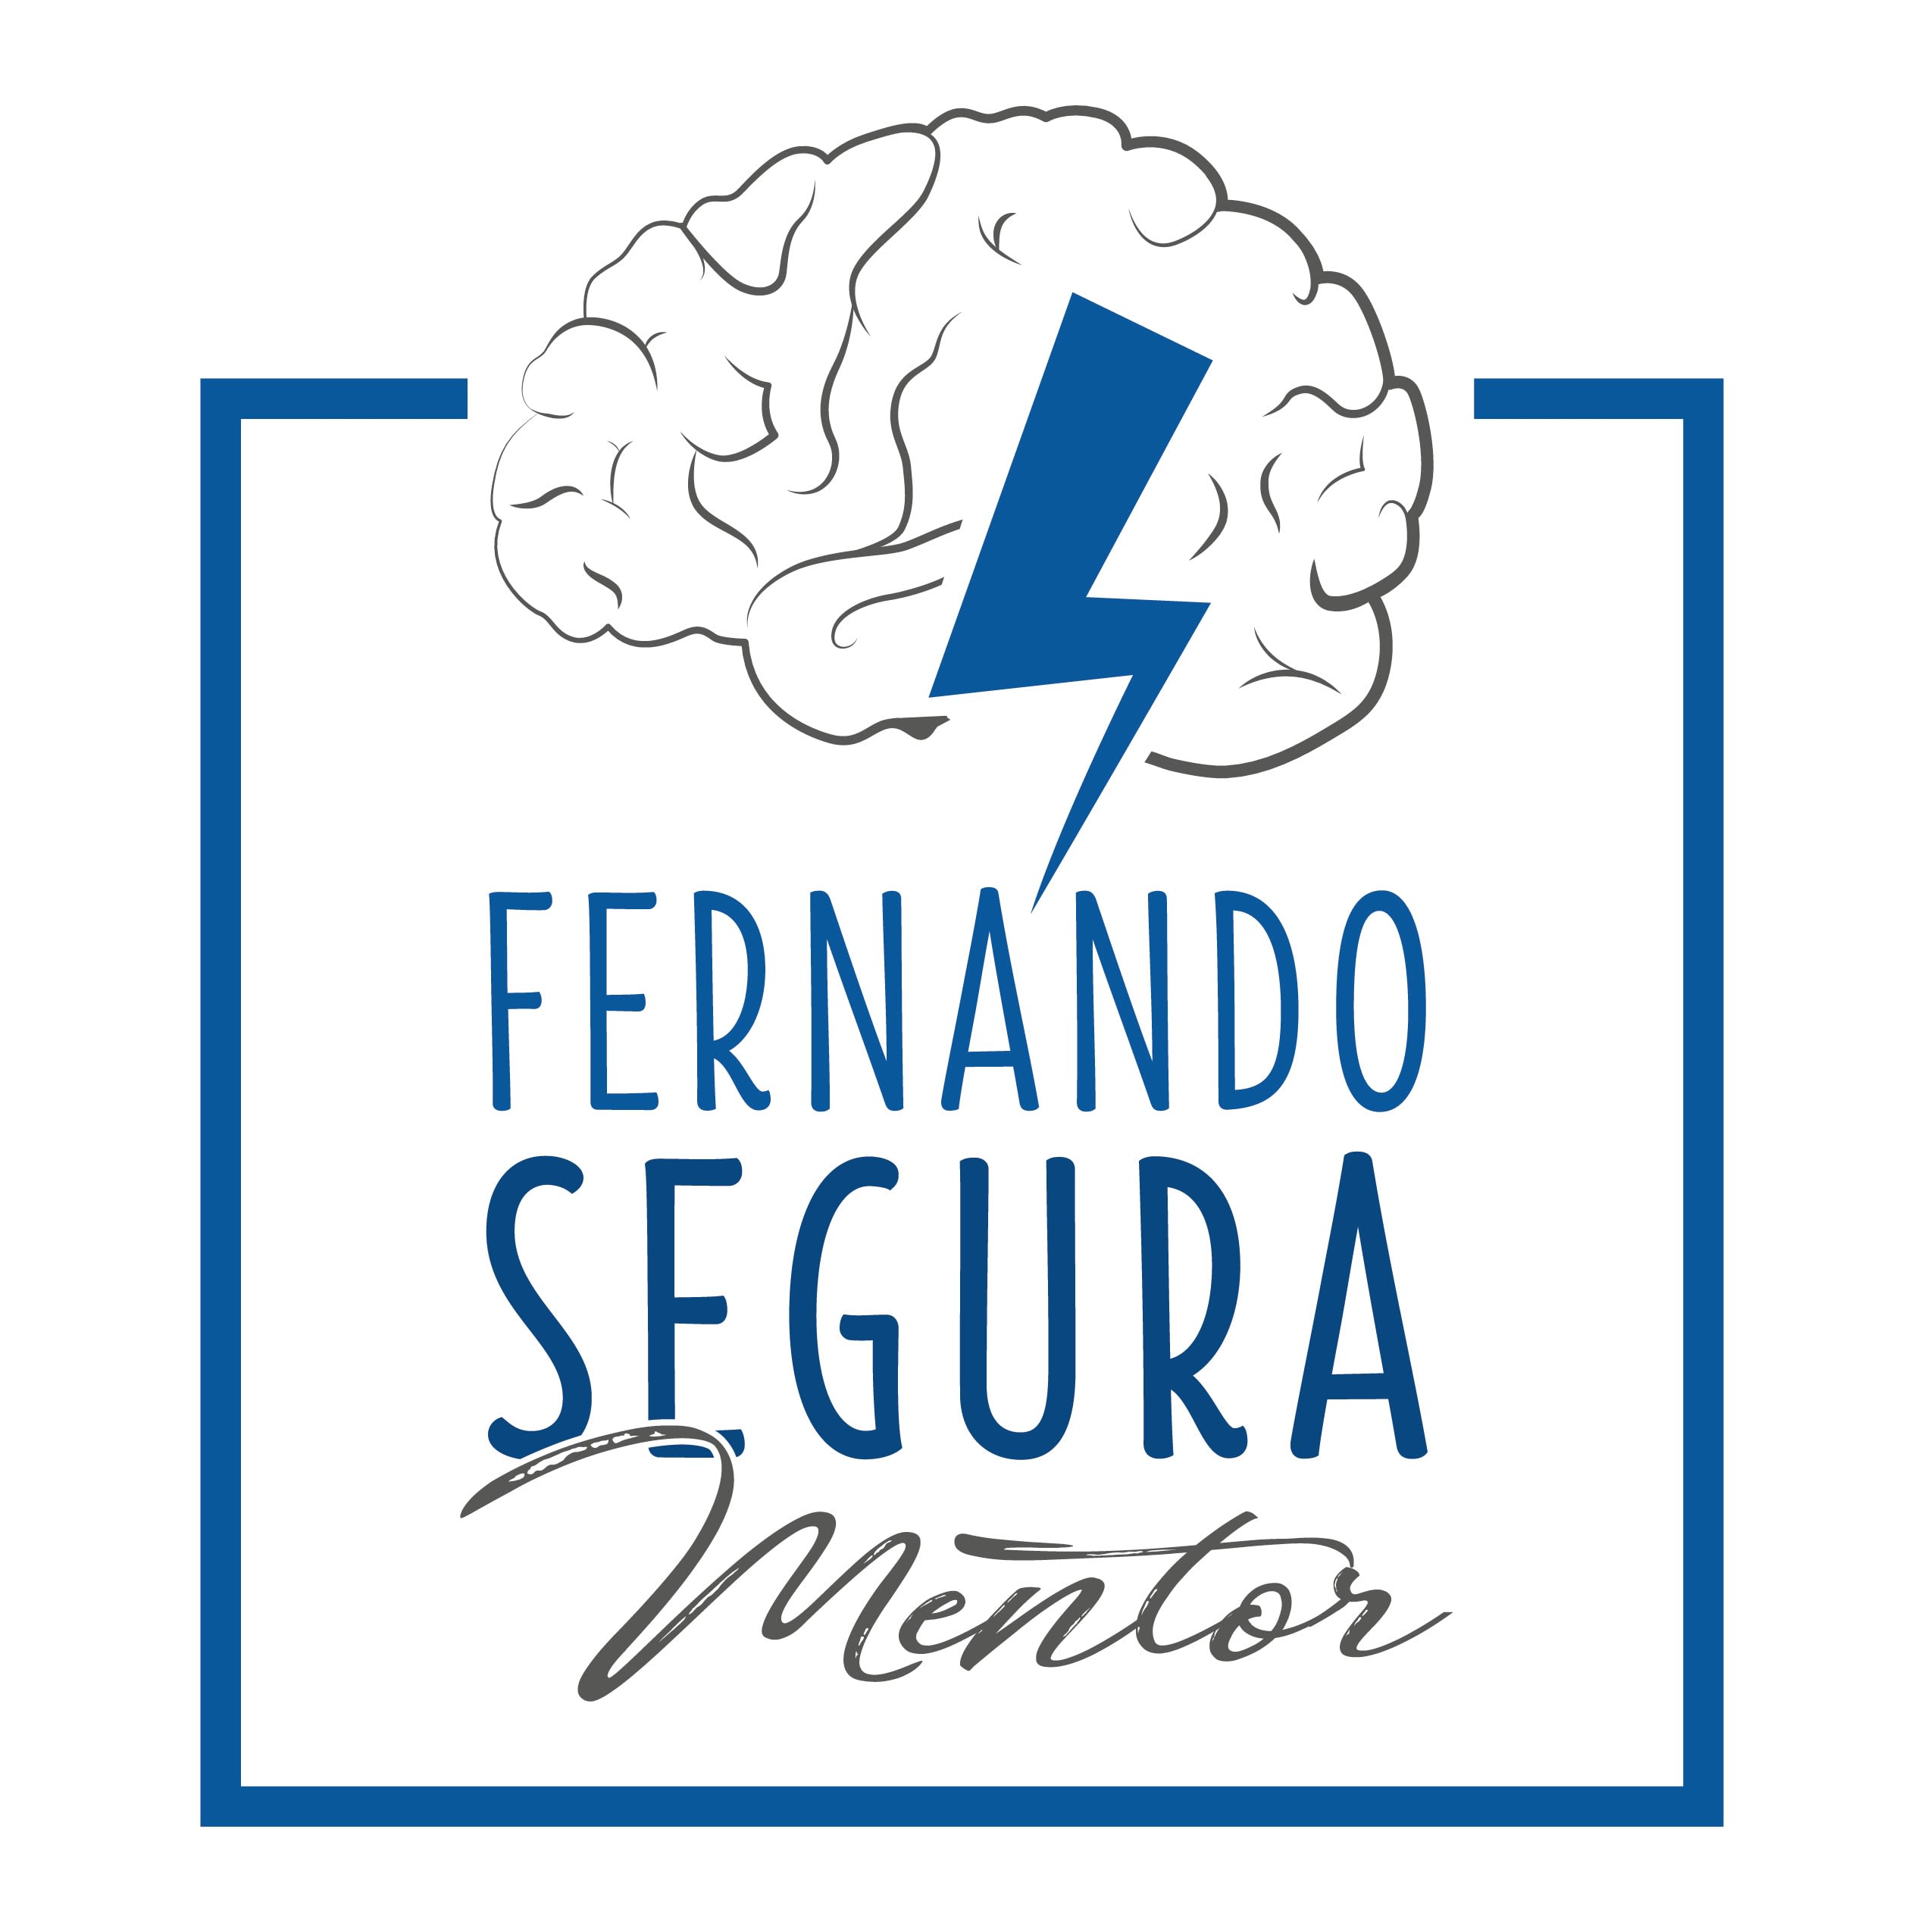 Fernando Segura Mentor